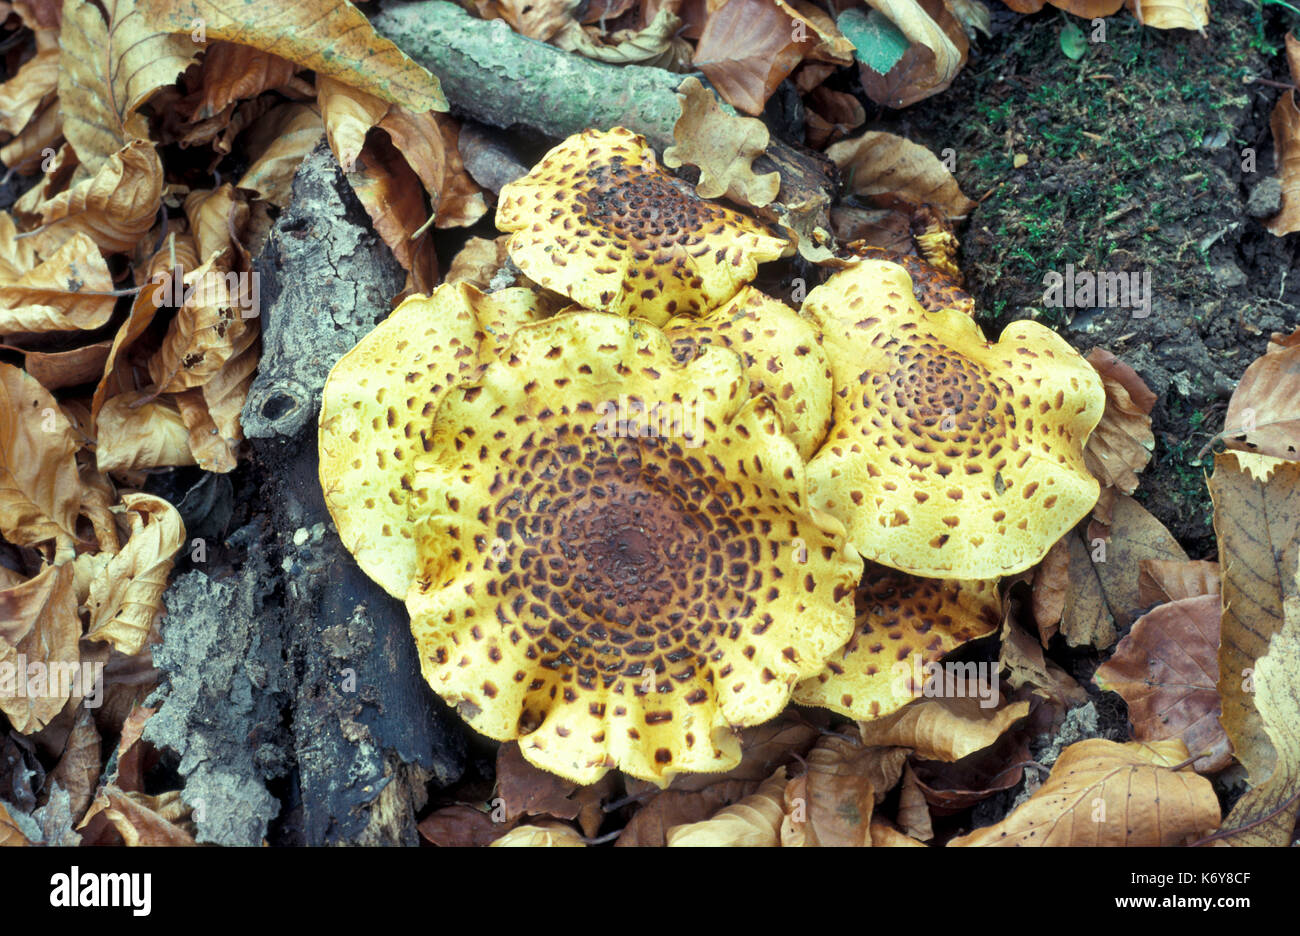 Dryad's Saddle or Scaly Polypore, Polyporus squamosus, UK, basidiomycete bracket fungus, Pheasant's back mushroom, edible Stock Photo